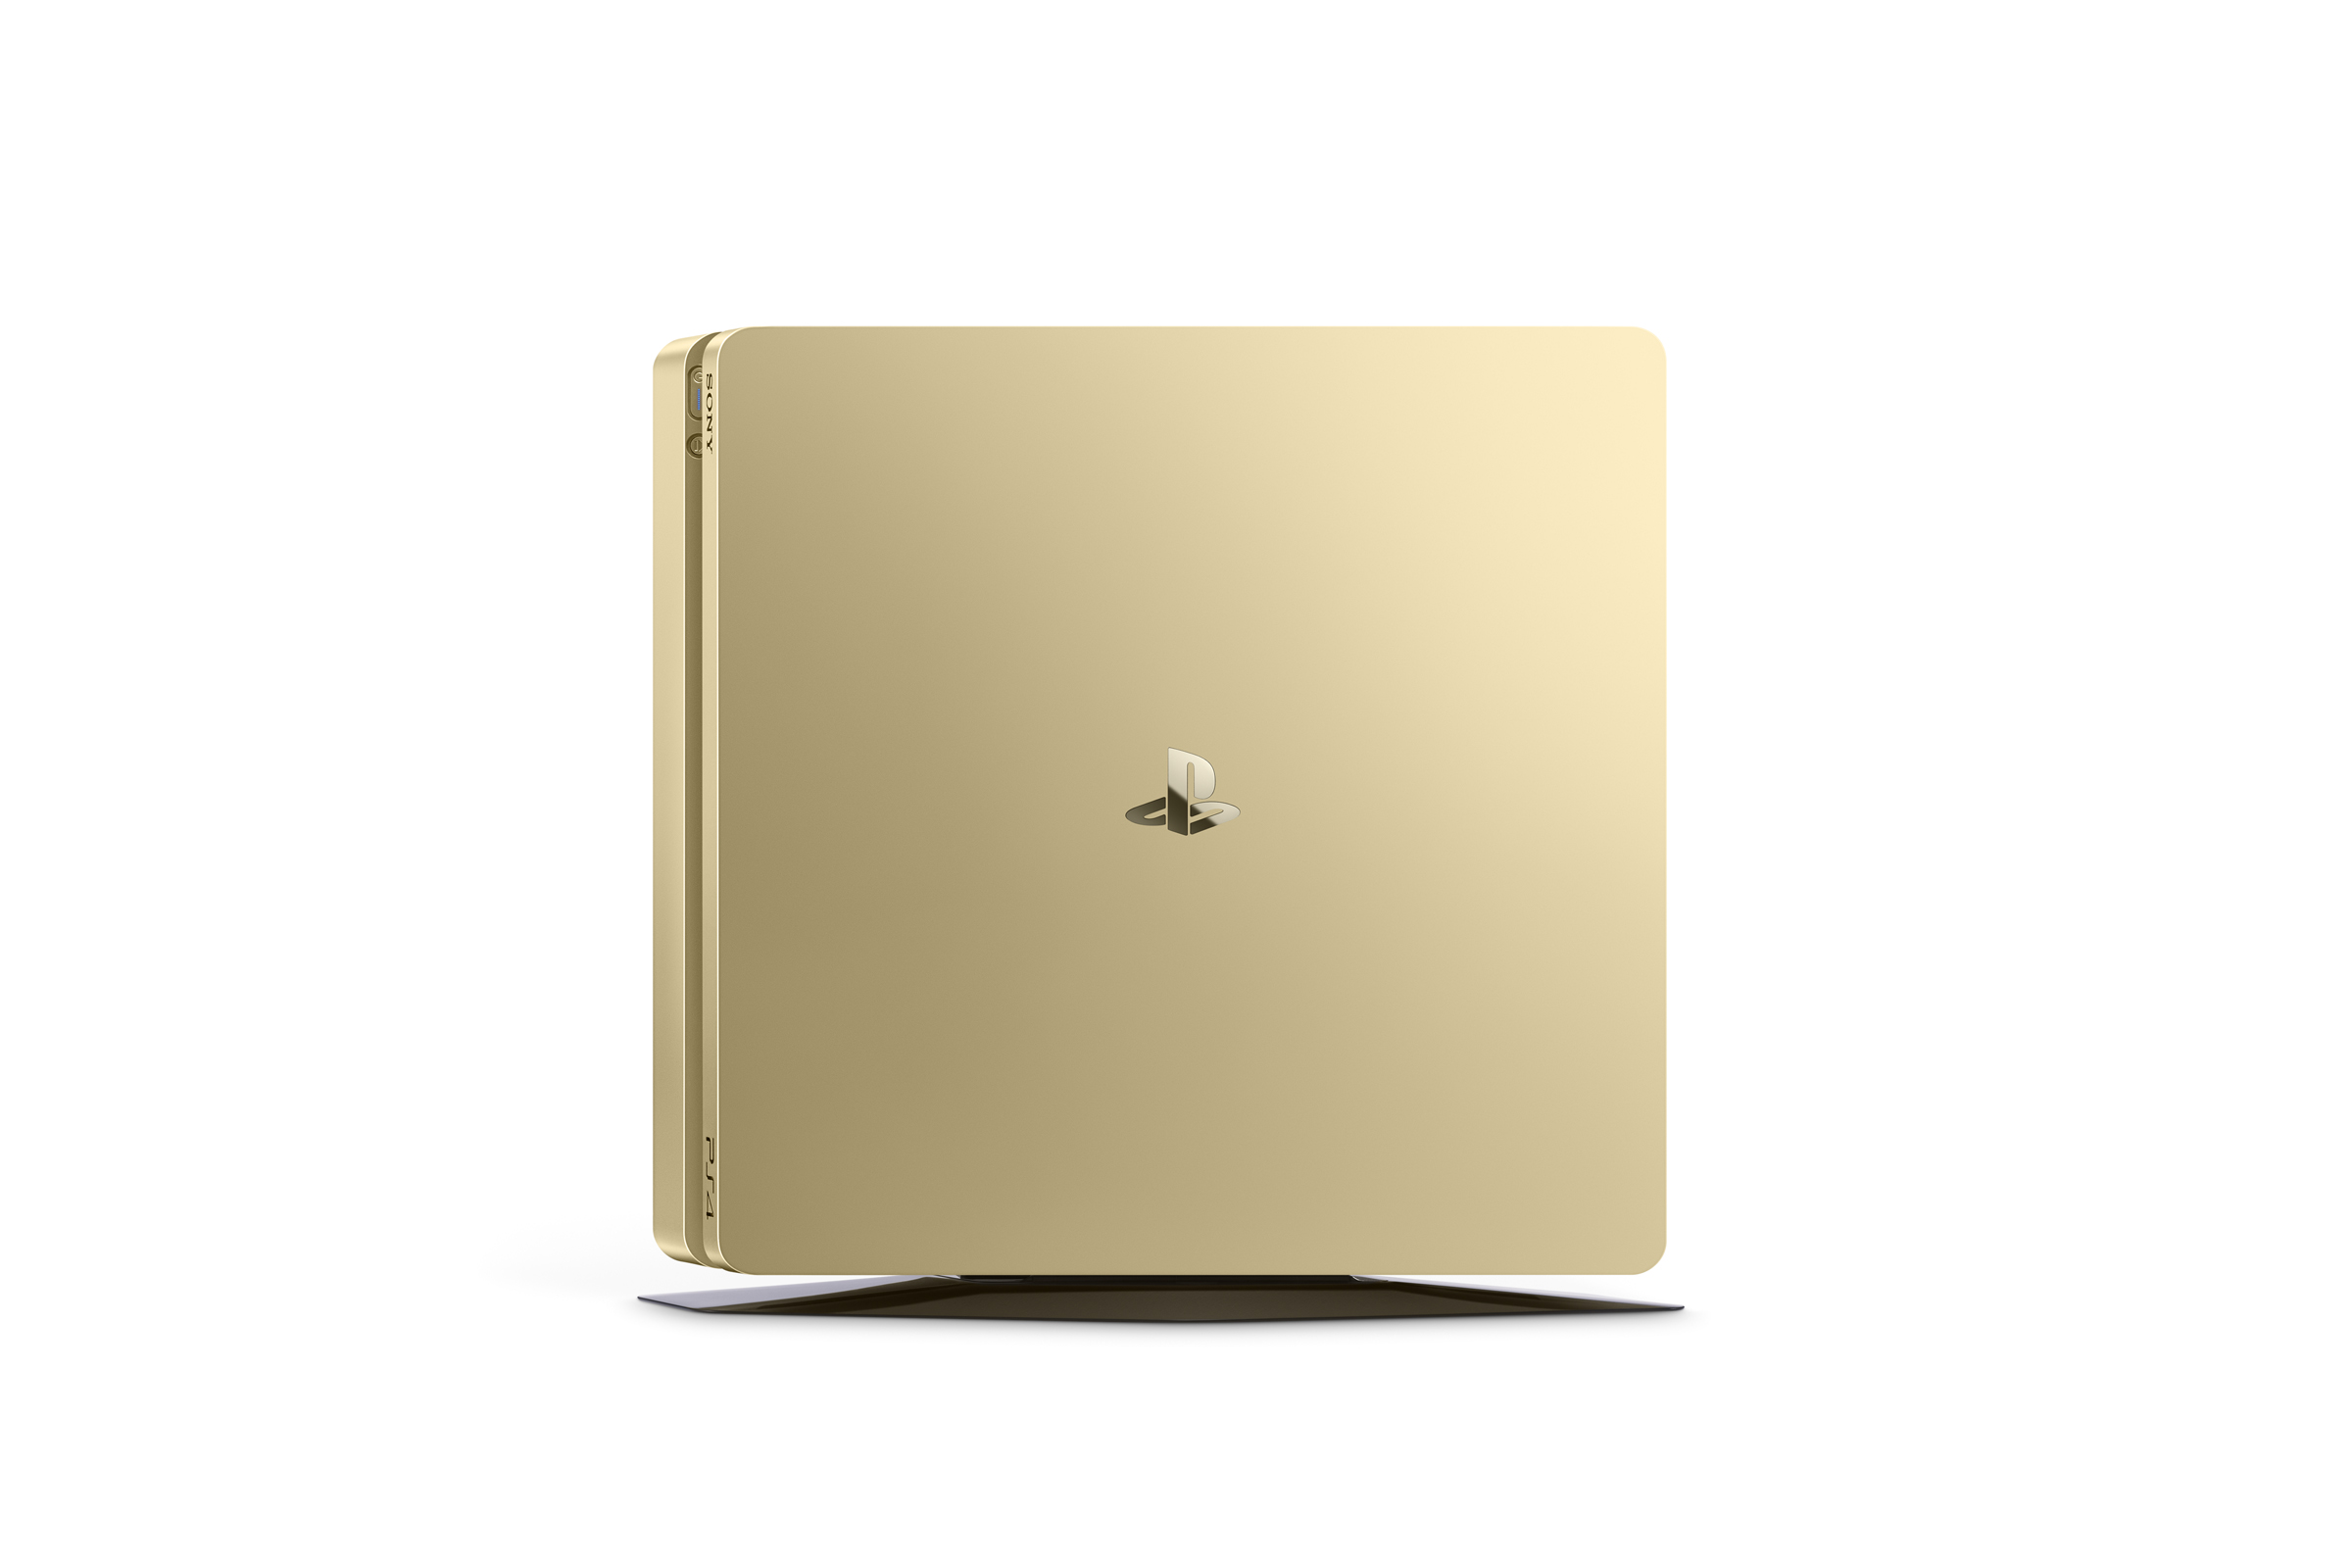 La Playstation 4 Slim Gold et Silver annoncée (8)